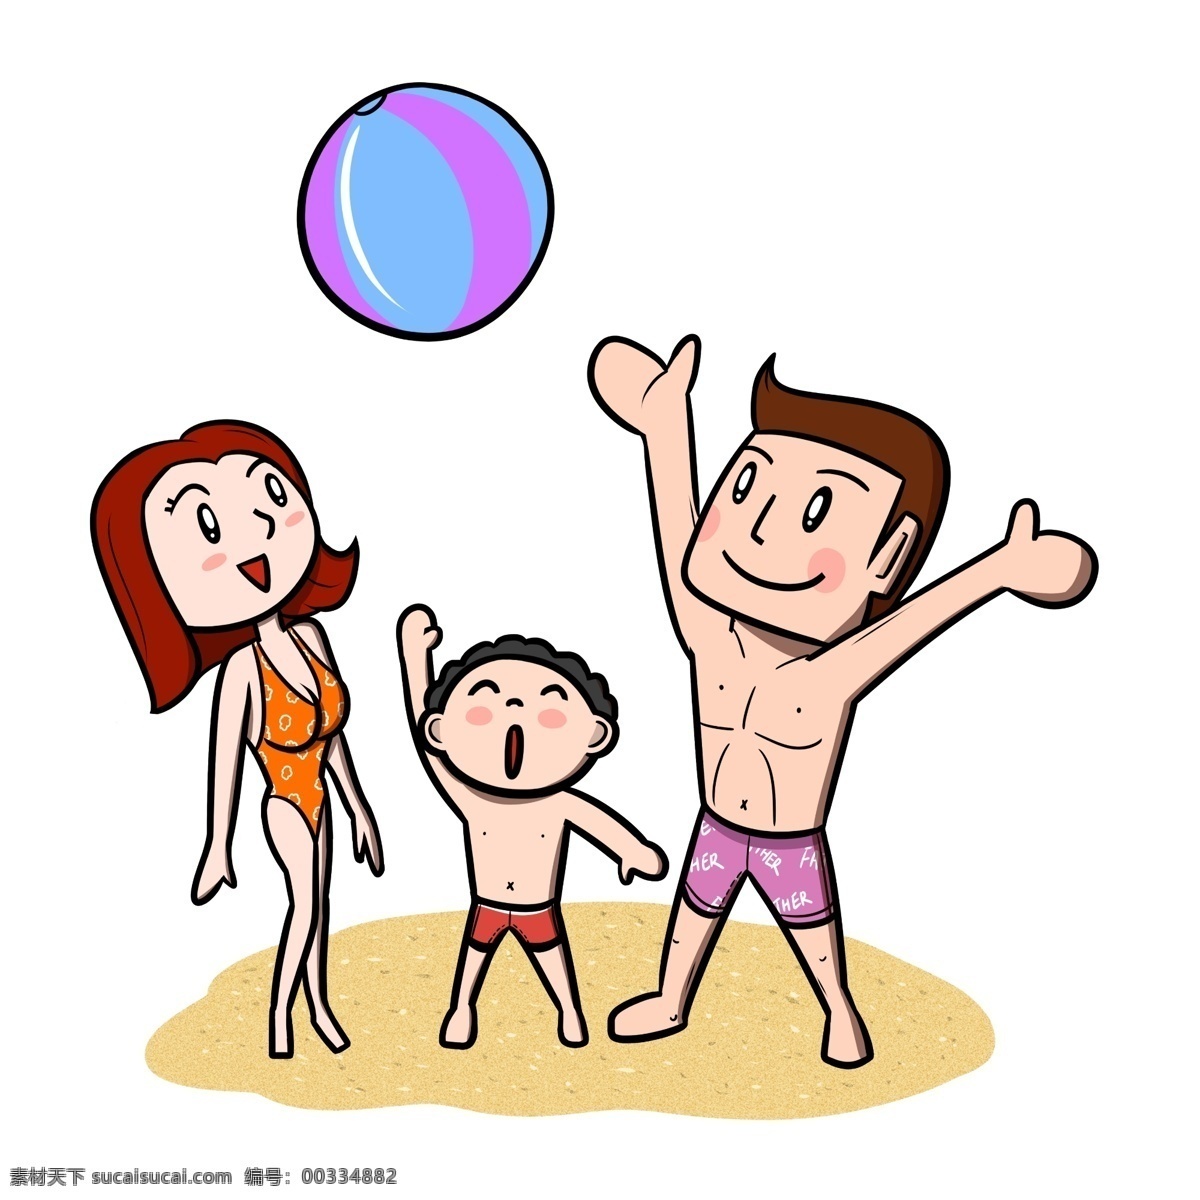 卡通 全家人 海滩 玩 沙滩 球 透明 底 夏季 夏天 卡通家人 儿童 玩耍 海边 海边人物 夏季人物 夏天人物 卡通人物 卡通夏季